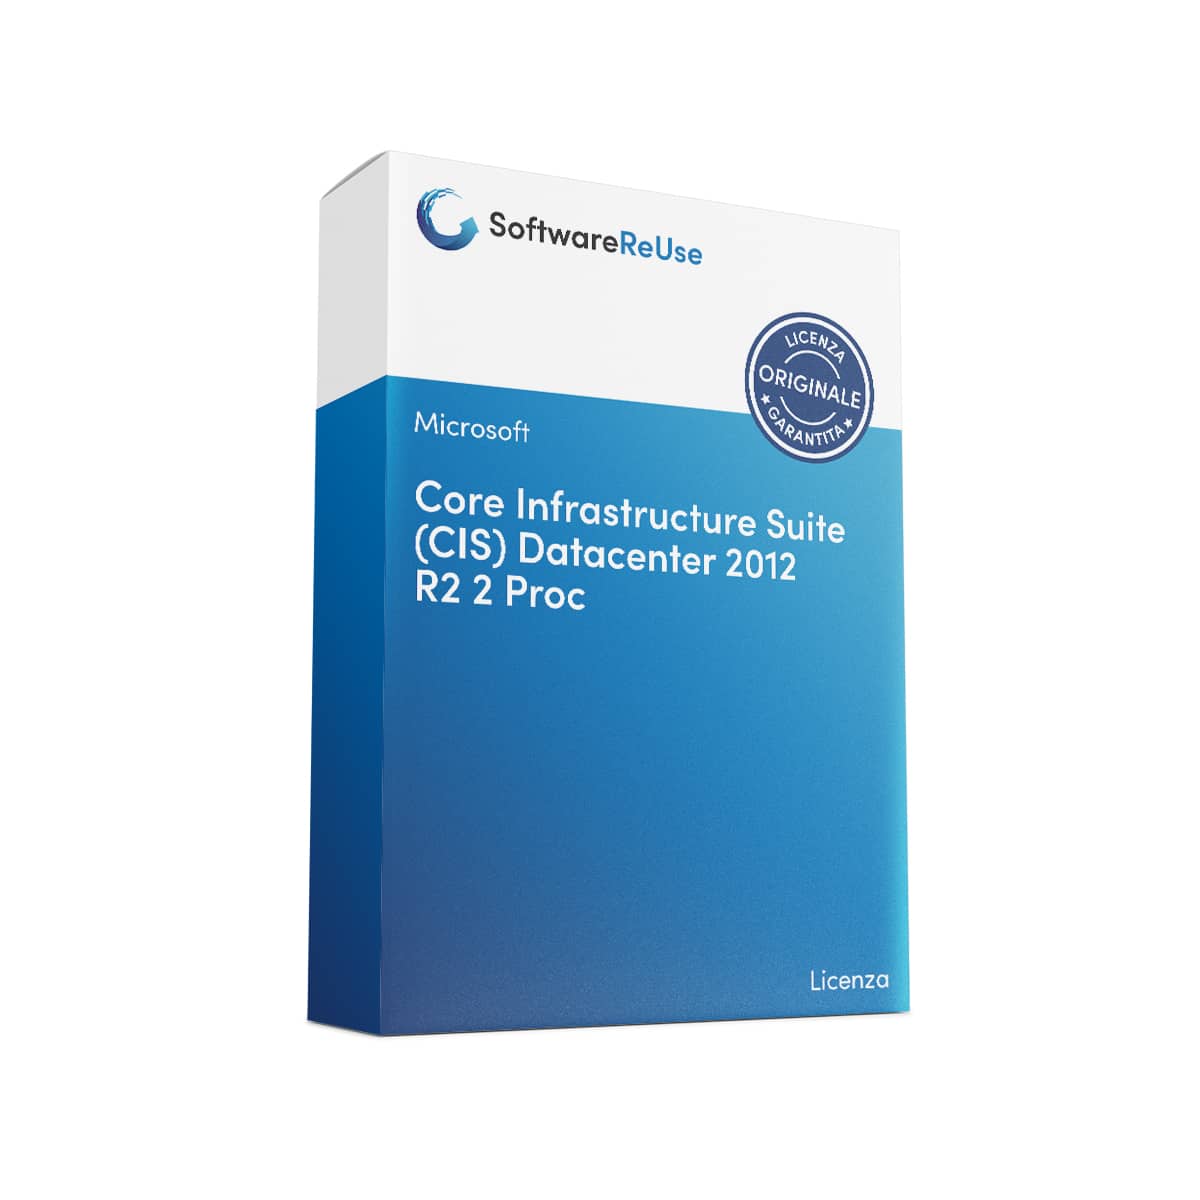 Core Infrastructure Suite CIS Datacenter 2012 R2 2 Proc IT